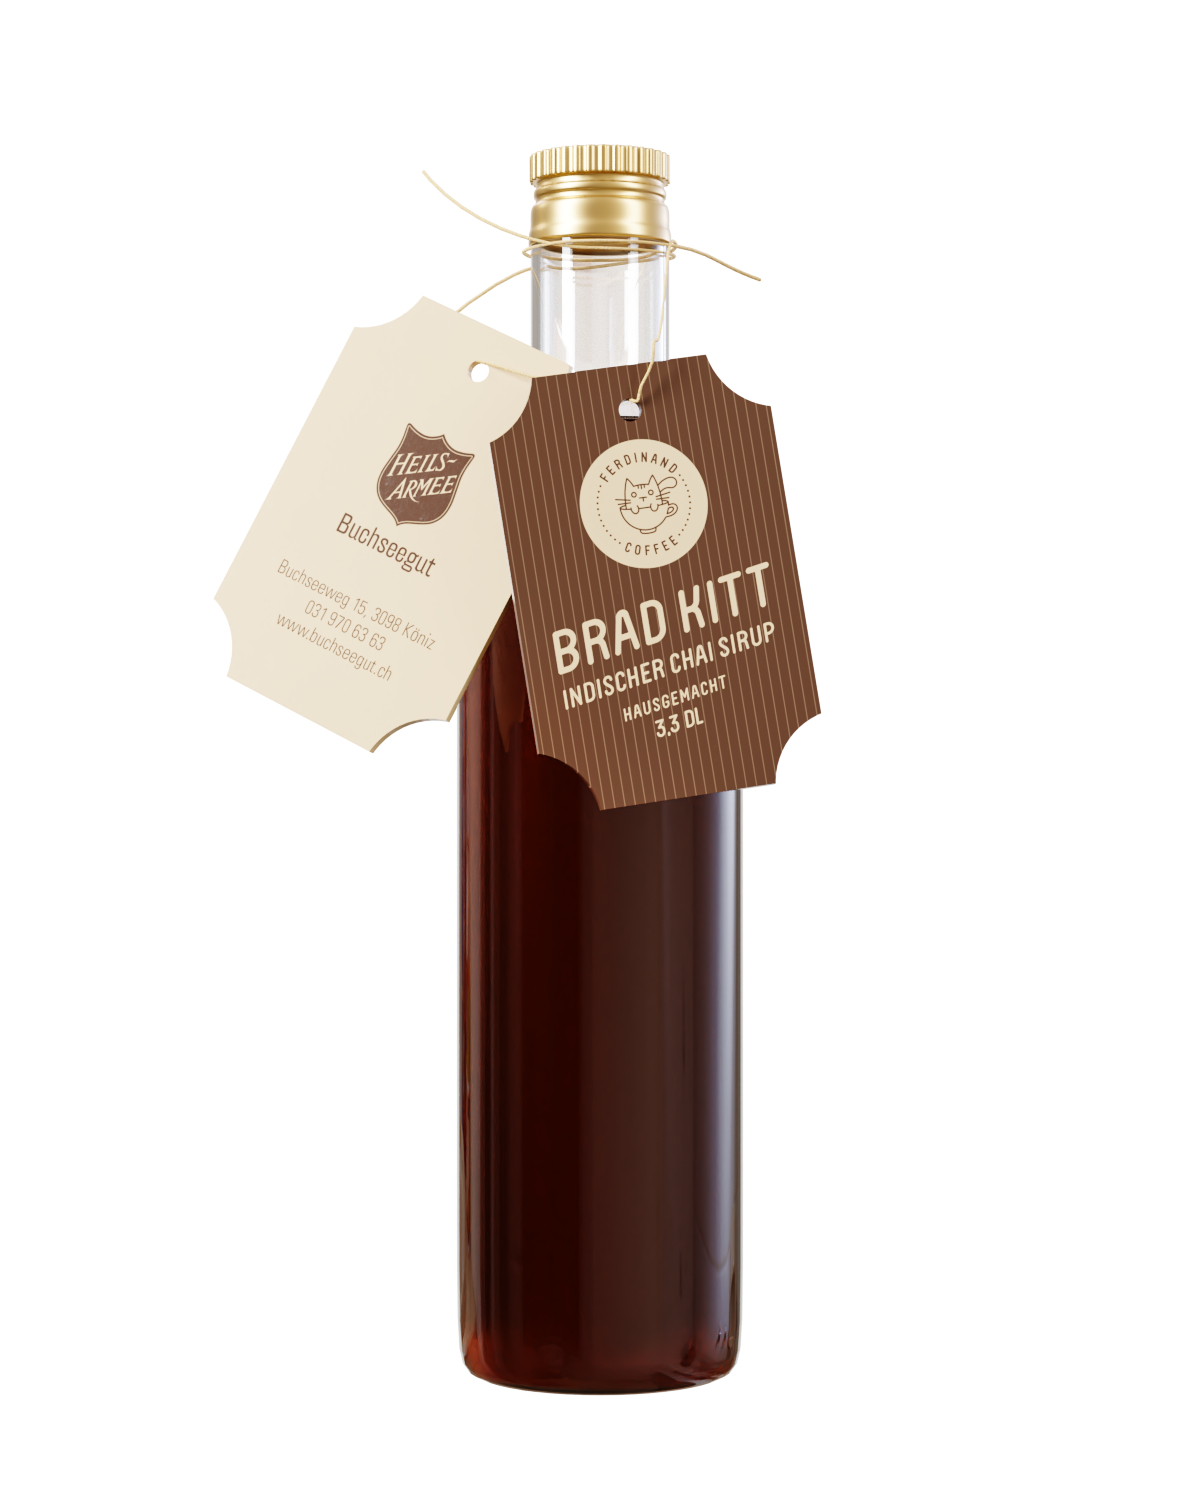 Brad Kitt (Premium)Indischer Chai Sirup 3,3 DL